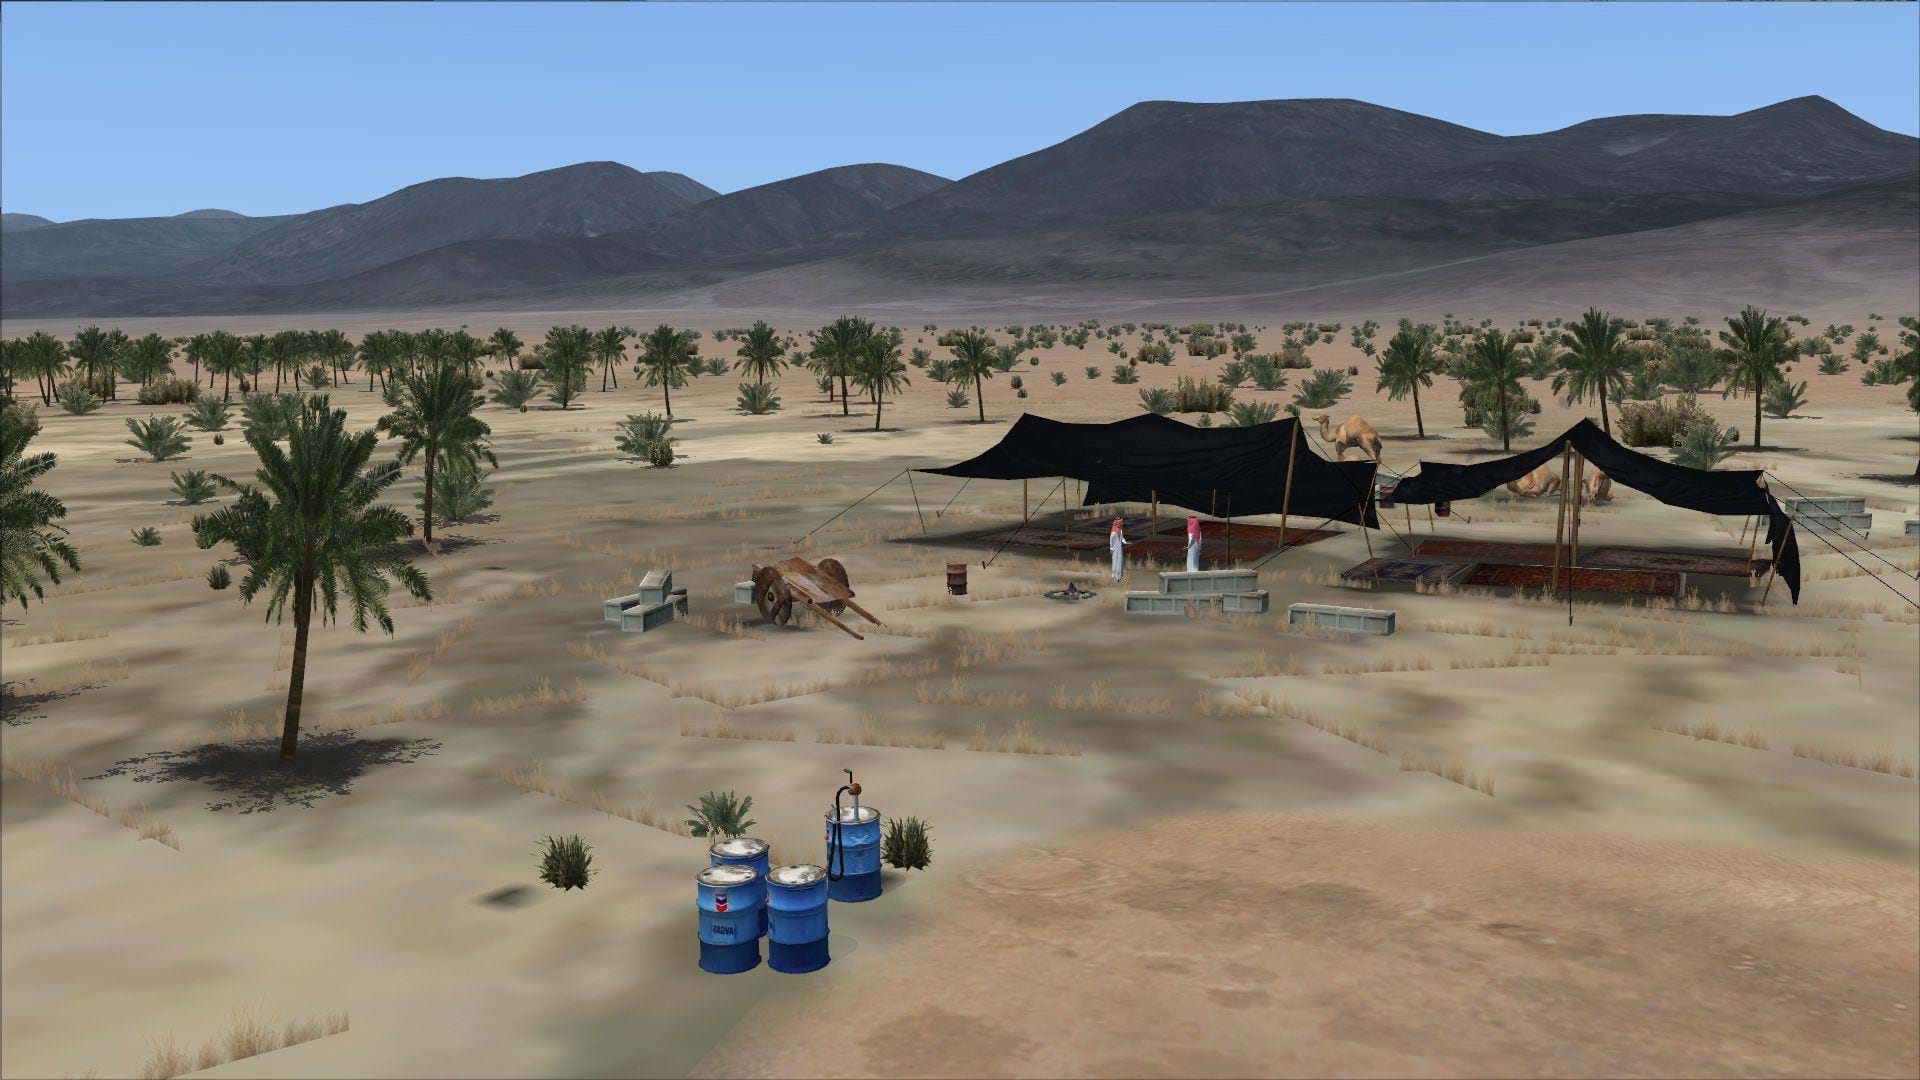 Aerosoft Sahara Desert - Bedouin settlement